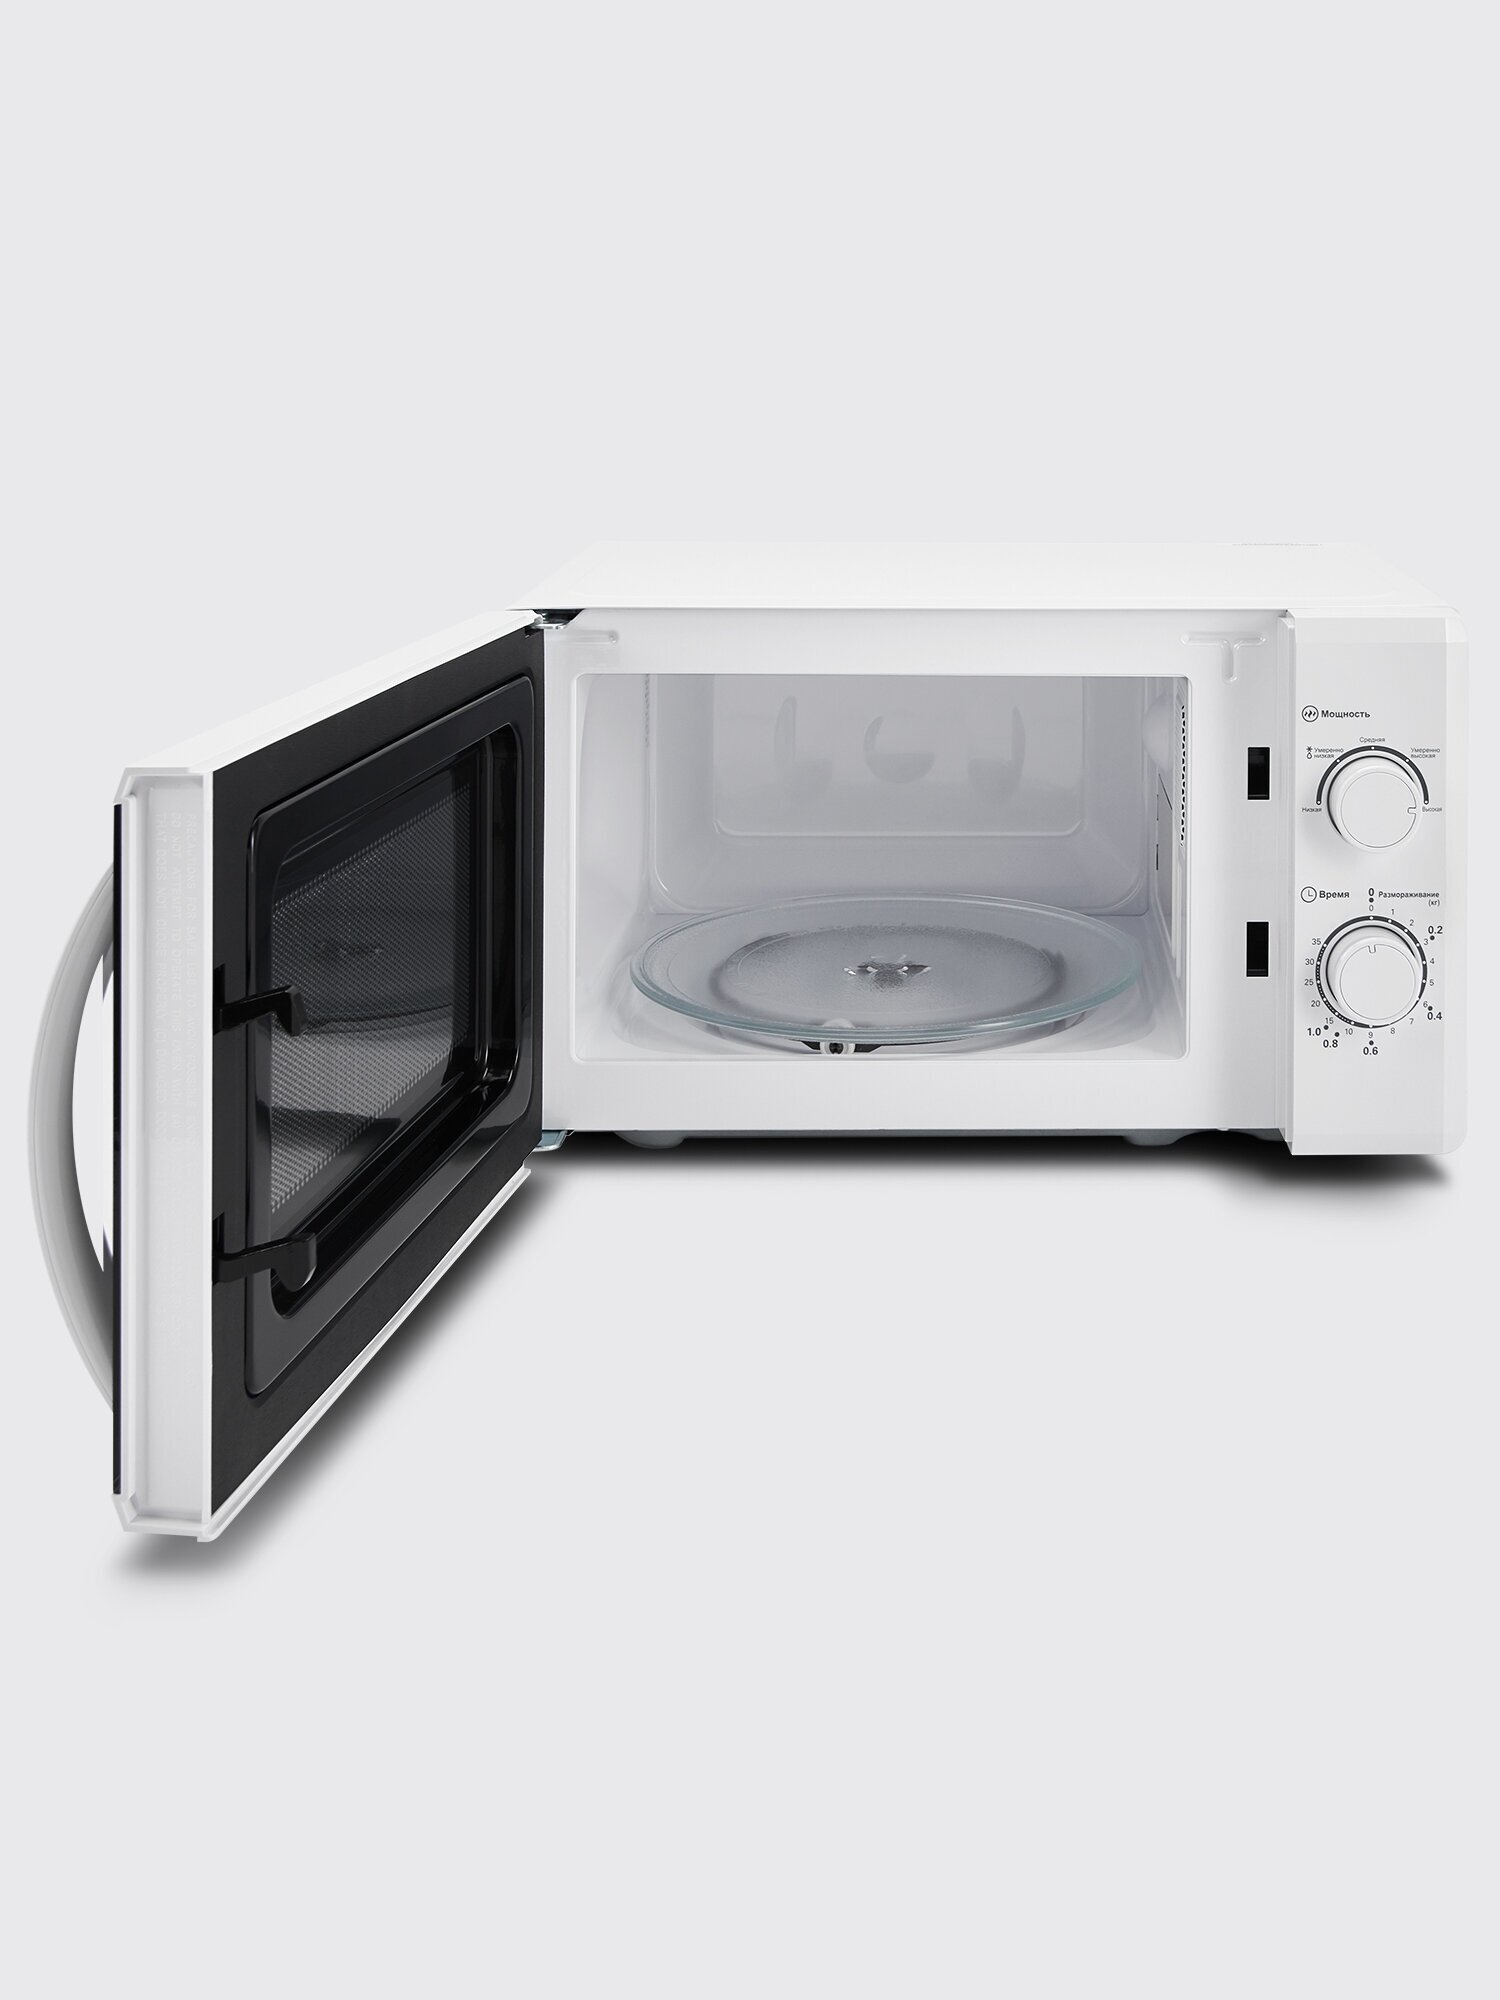 Микроволновая печь Comfee CMW207M02W, 20 л, 700 Вт, внутреннее освещение, белый